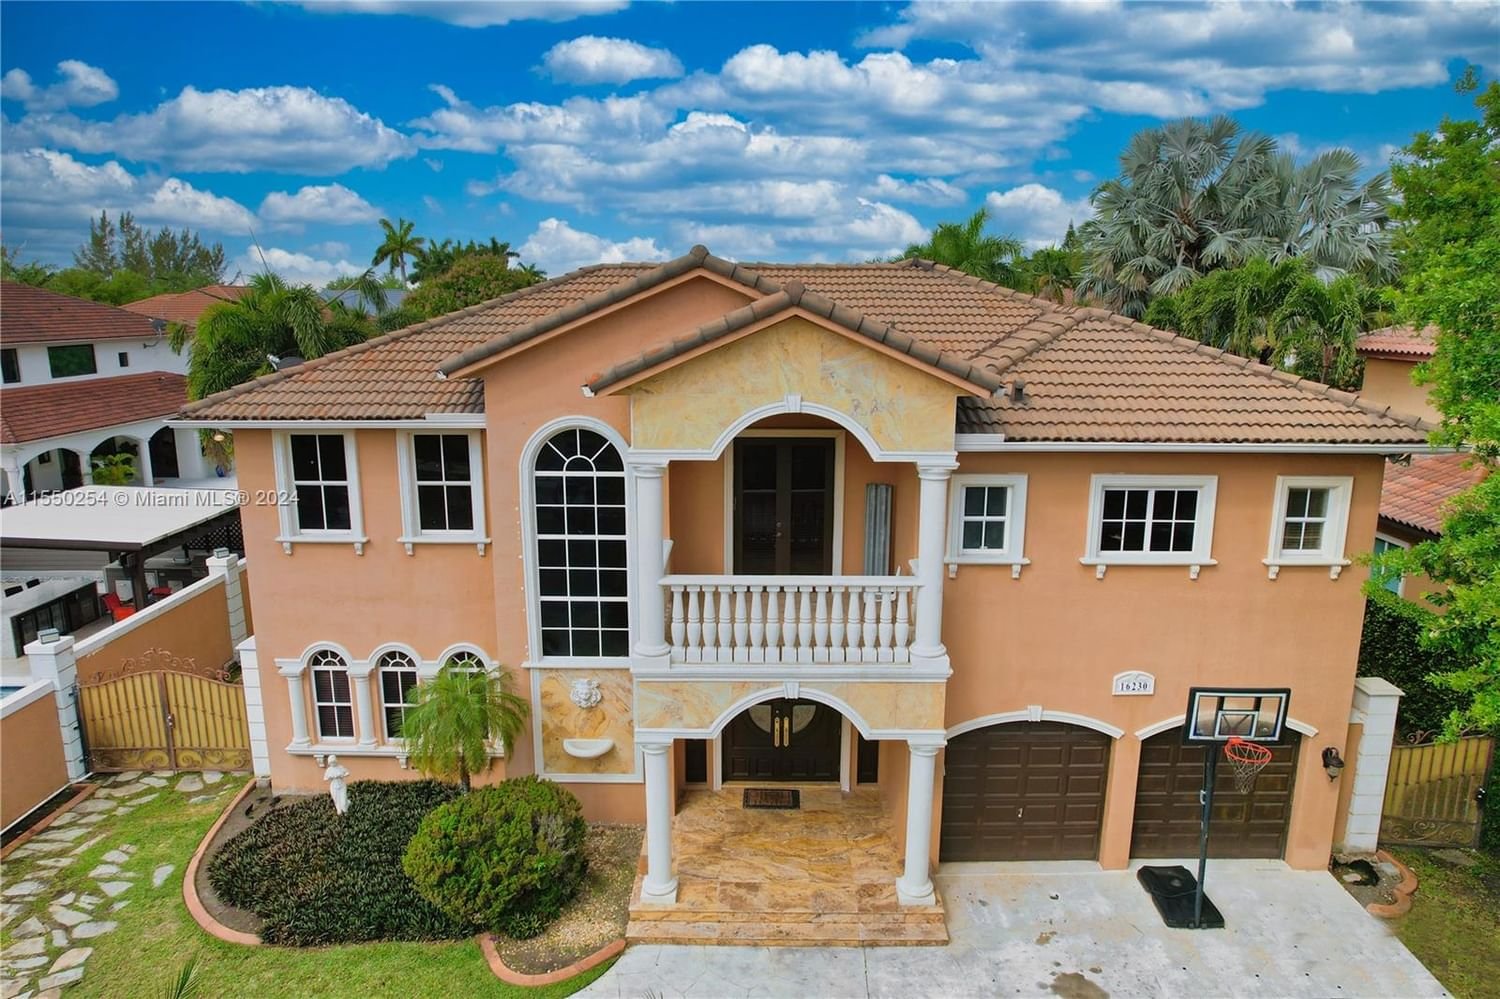 Real estate property located at 16230 84th Pl, Miami-Dade County, GRAVERAN ESTATES, Miami Lakes, FL